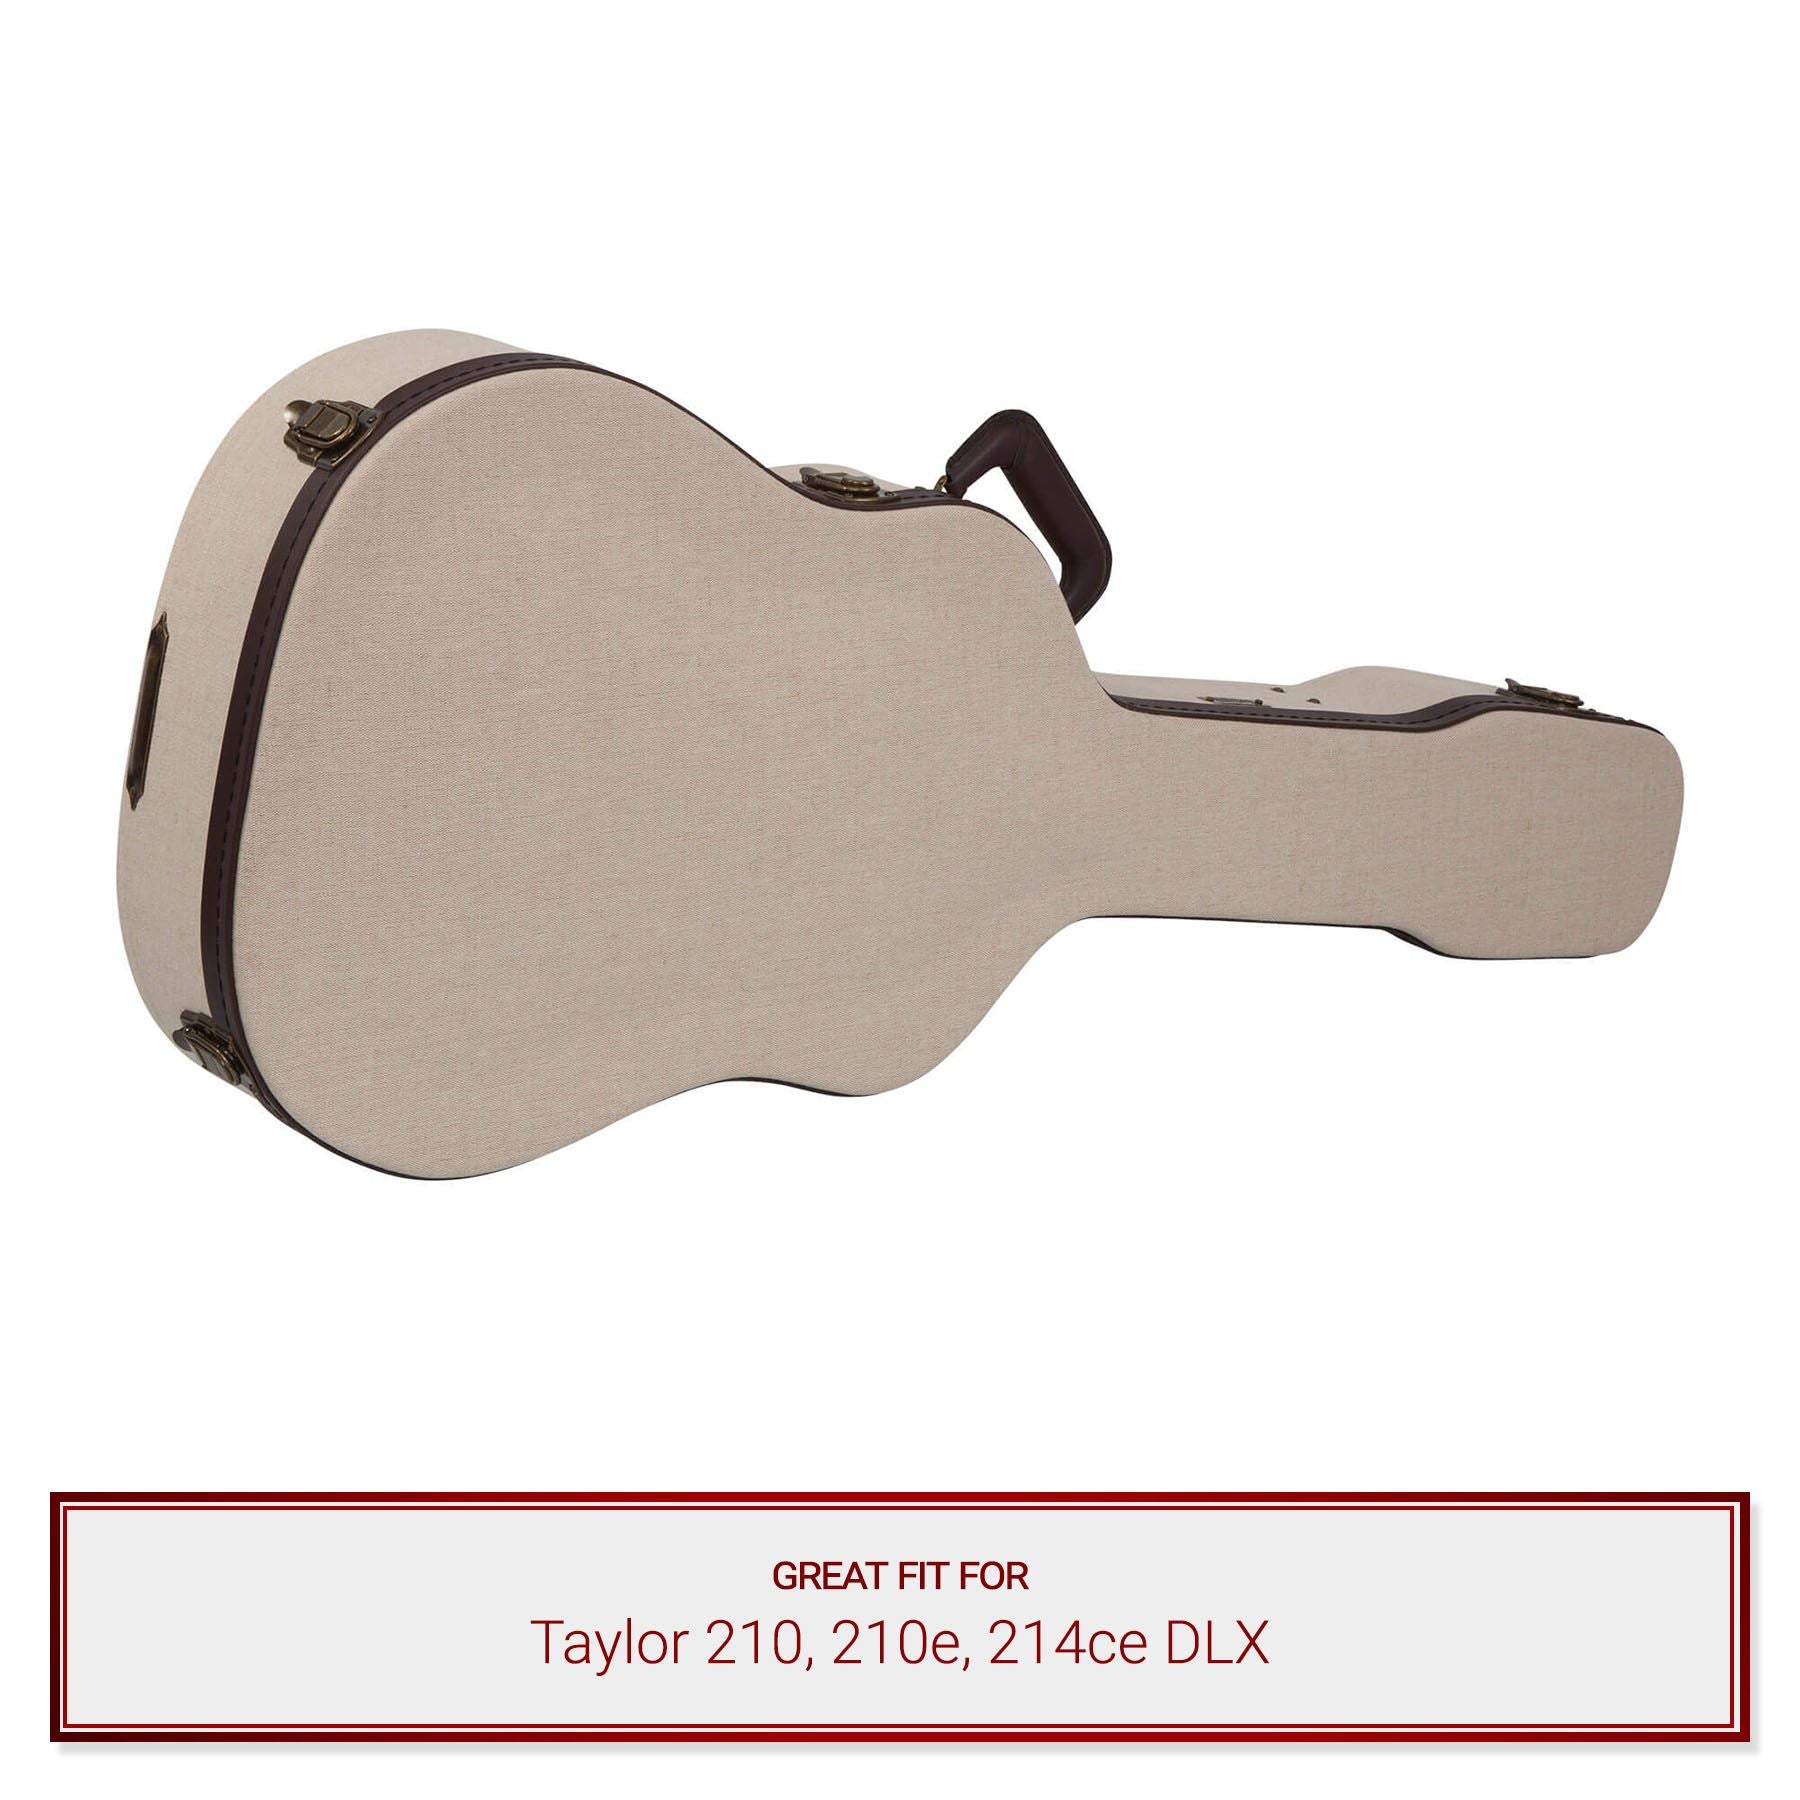 Gator Journeyman Case fits Taylor 210, 210e, 214ce DLX Acoustic